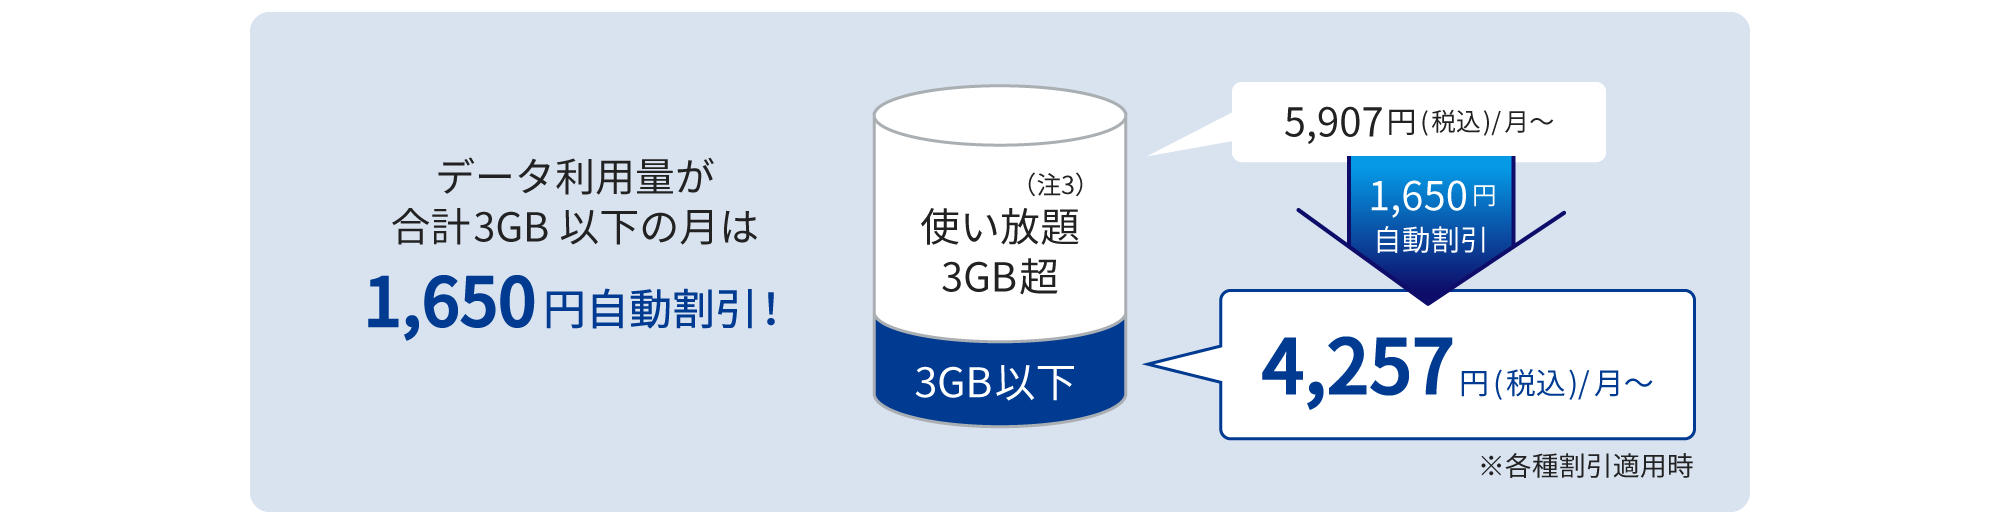 データ利用量が3GB以下の月は1,650円自動割引され、4,257円(税込)/月に！